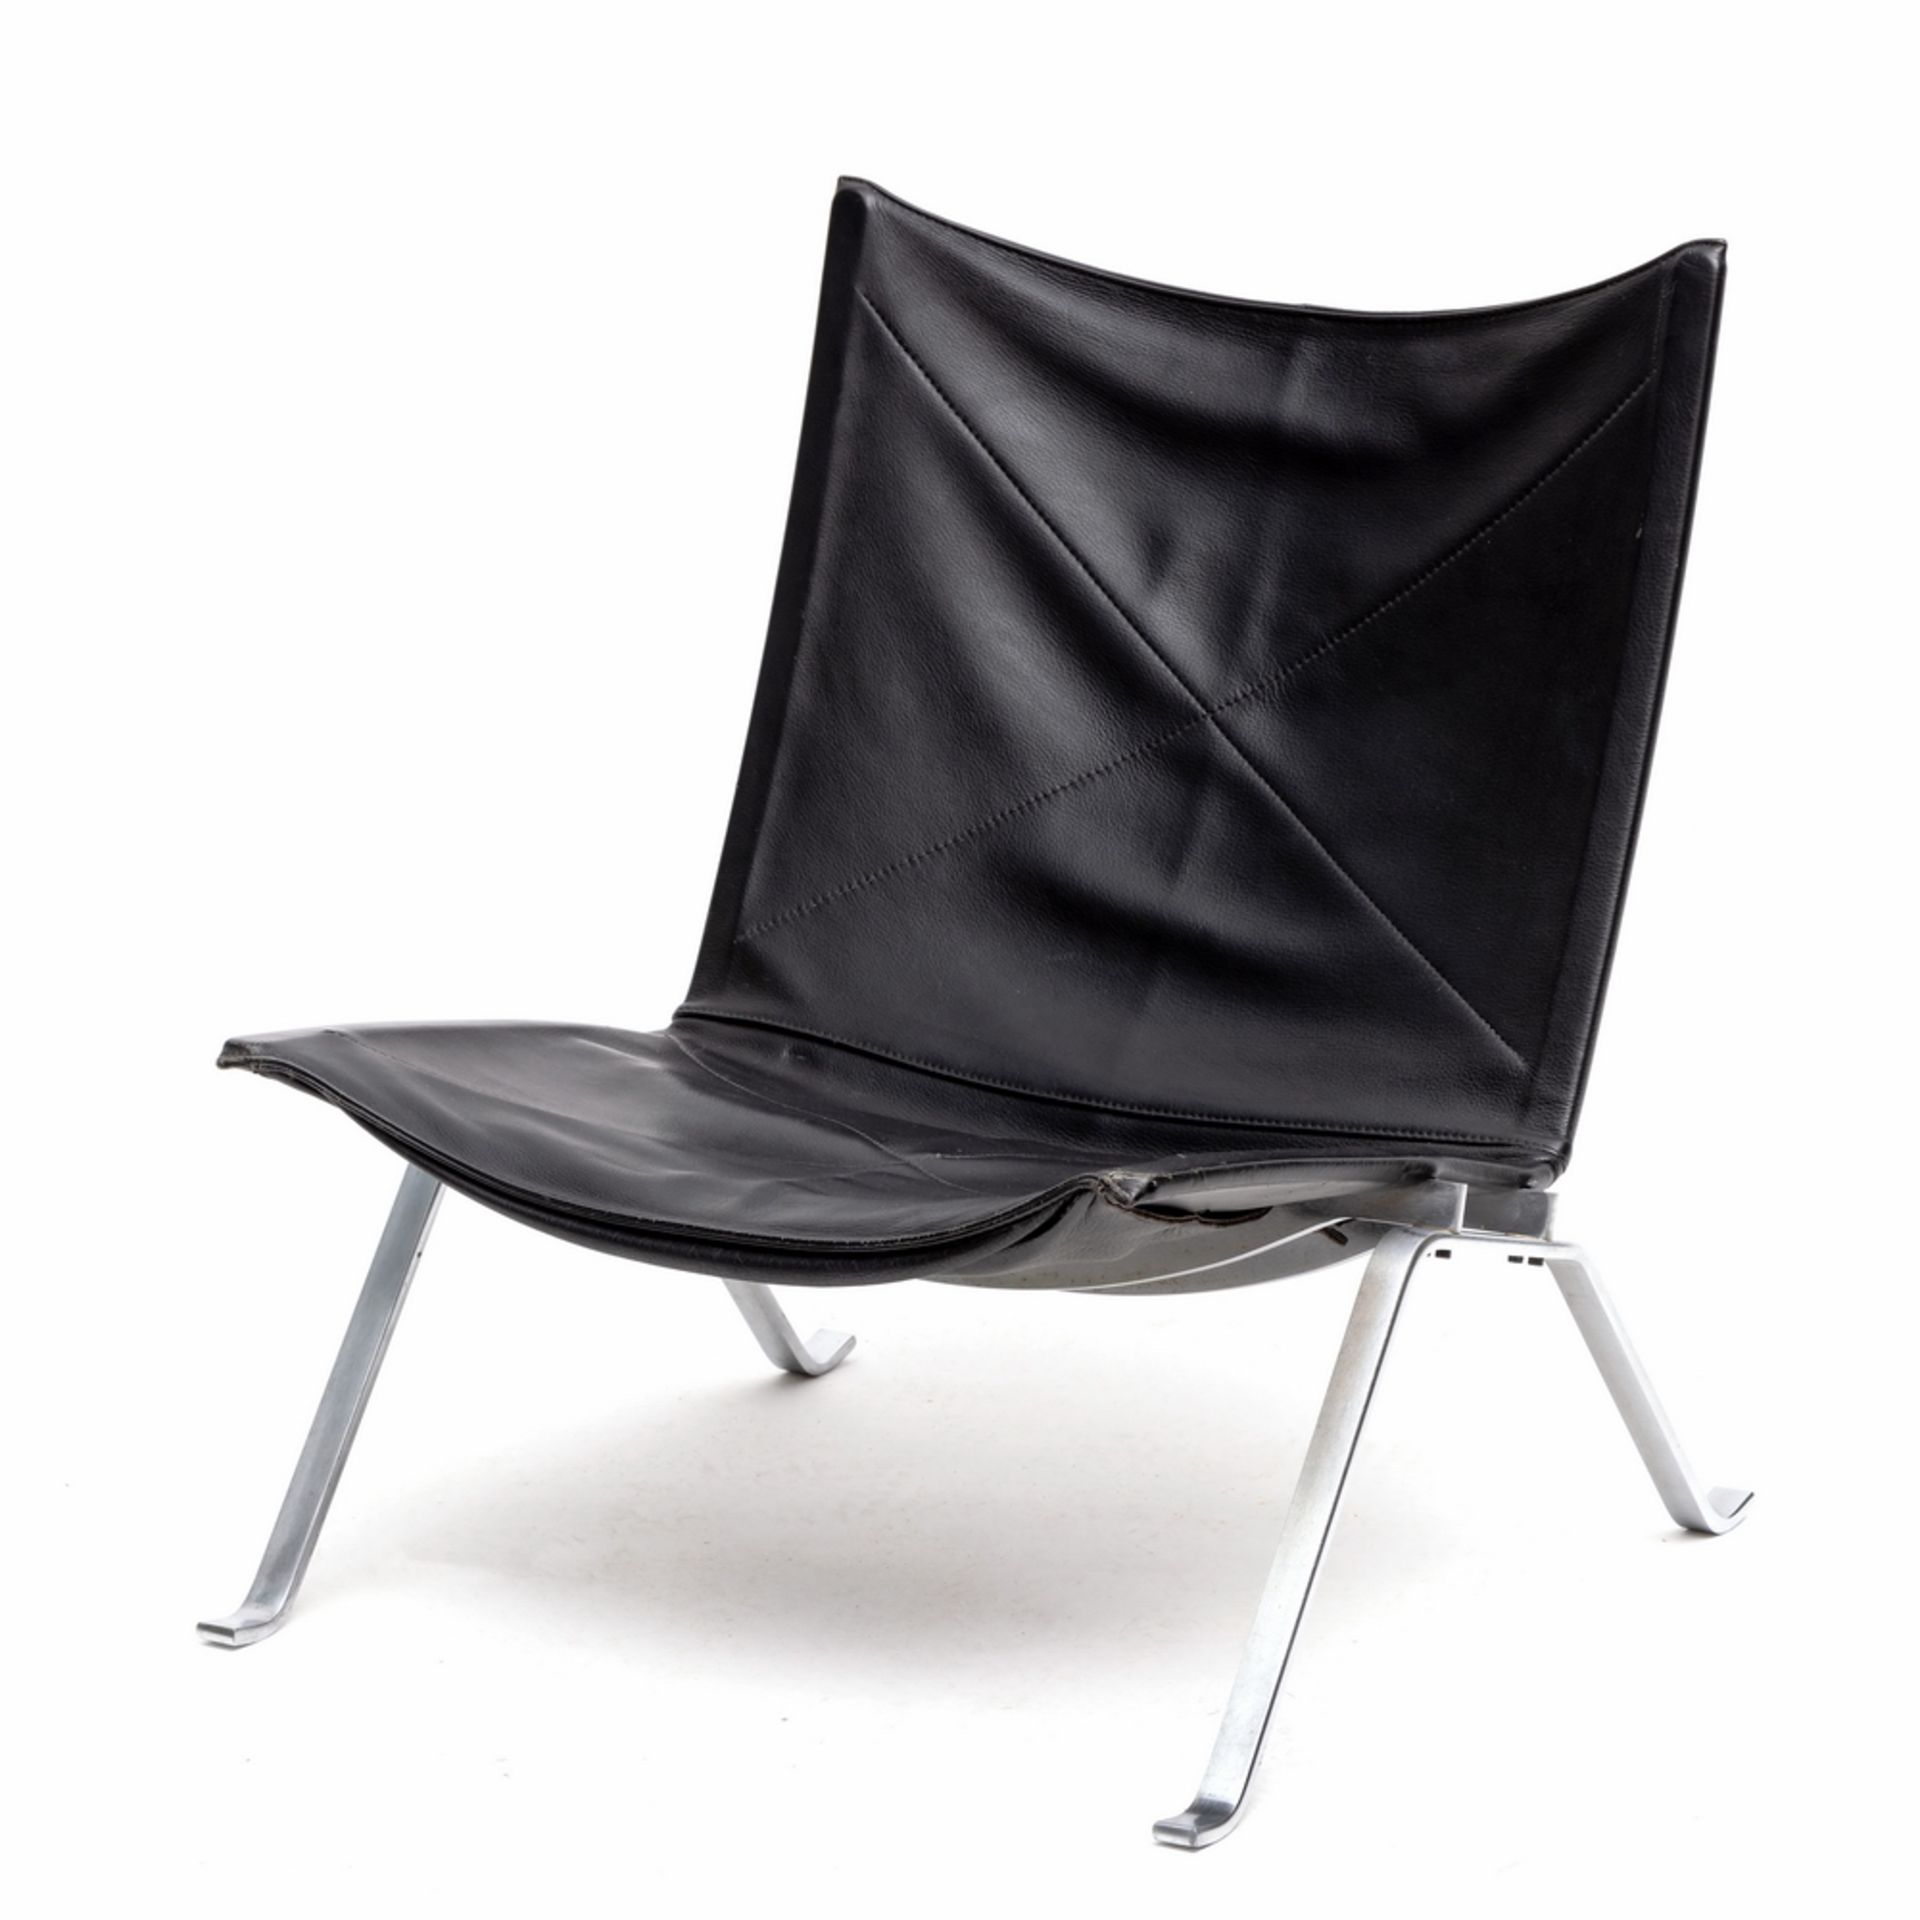 Poul Kjaerholm voor Fritz Hansen, Denenmarken, PK22 lounge chair, ontwerp 1955-1956, vervaardigd 198